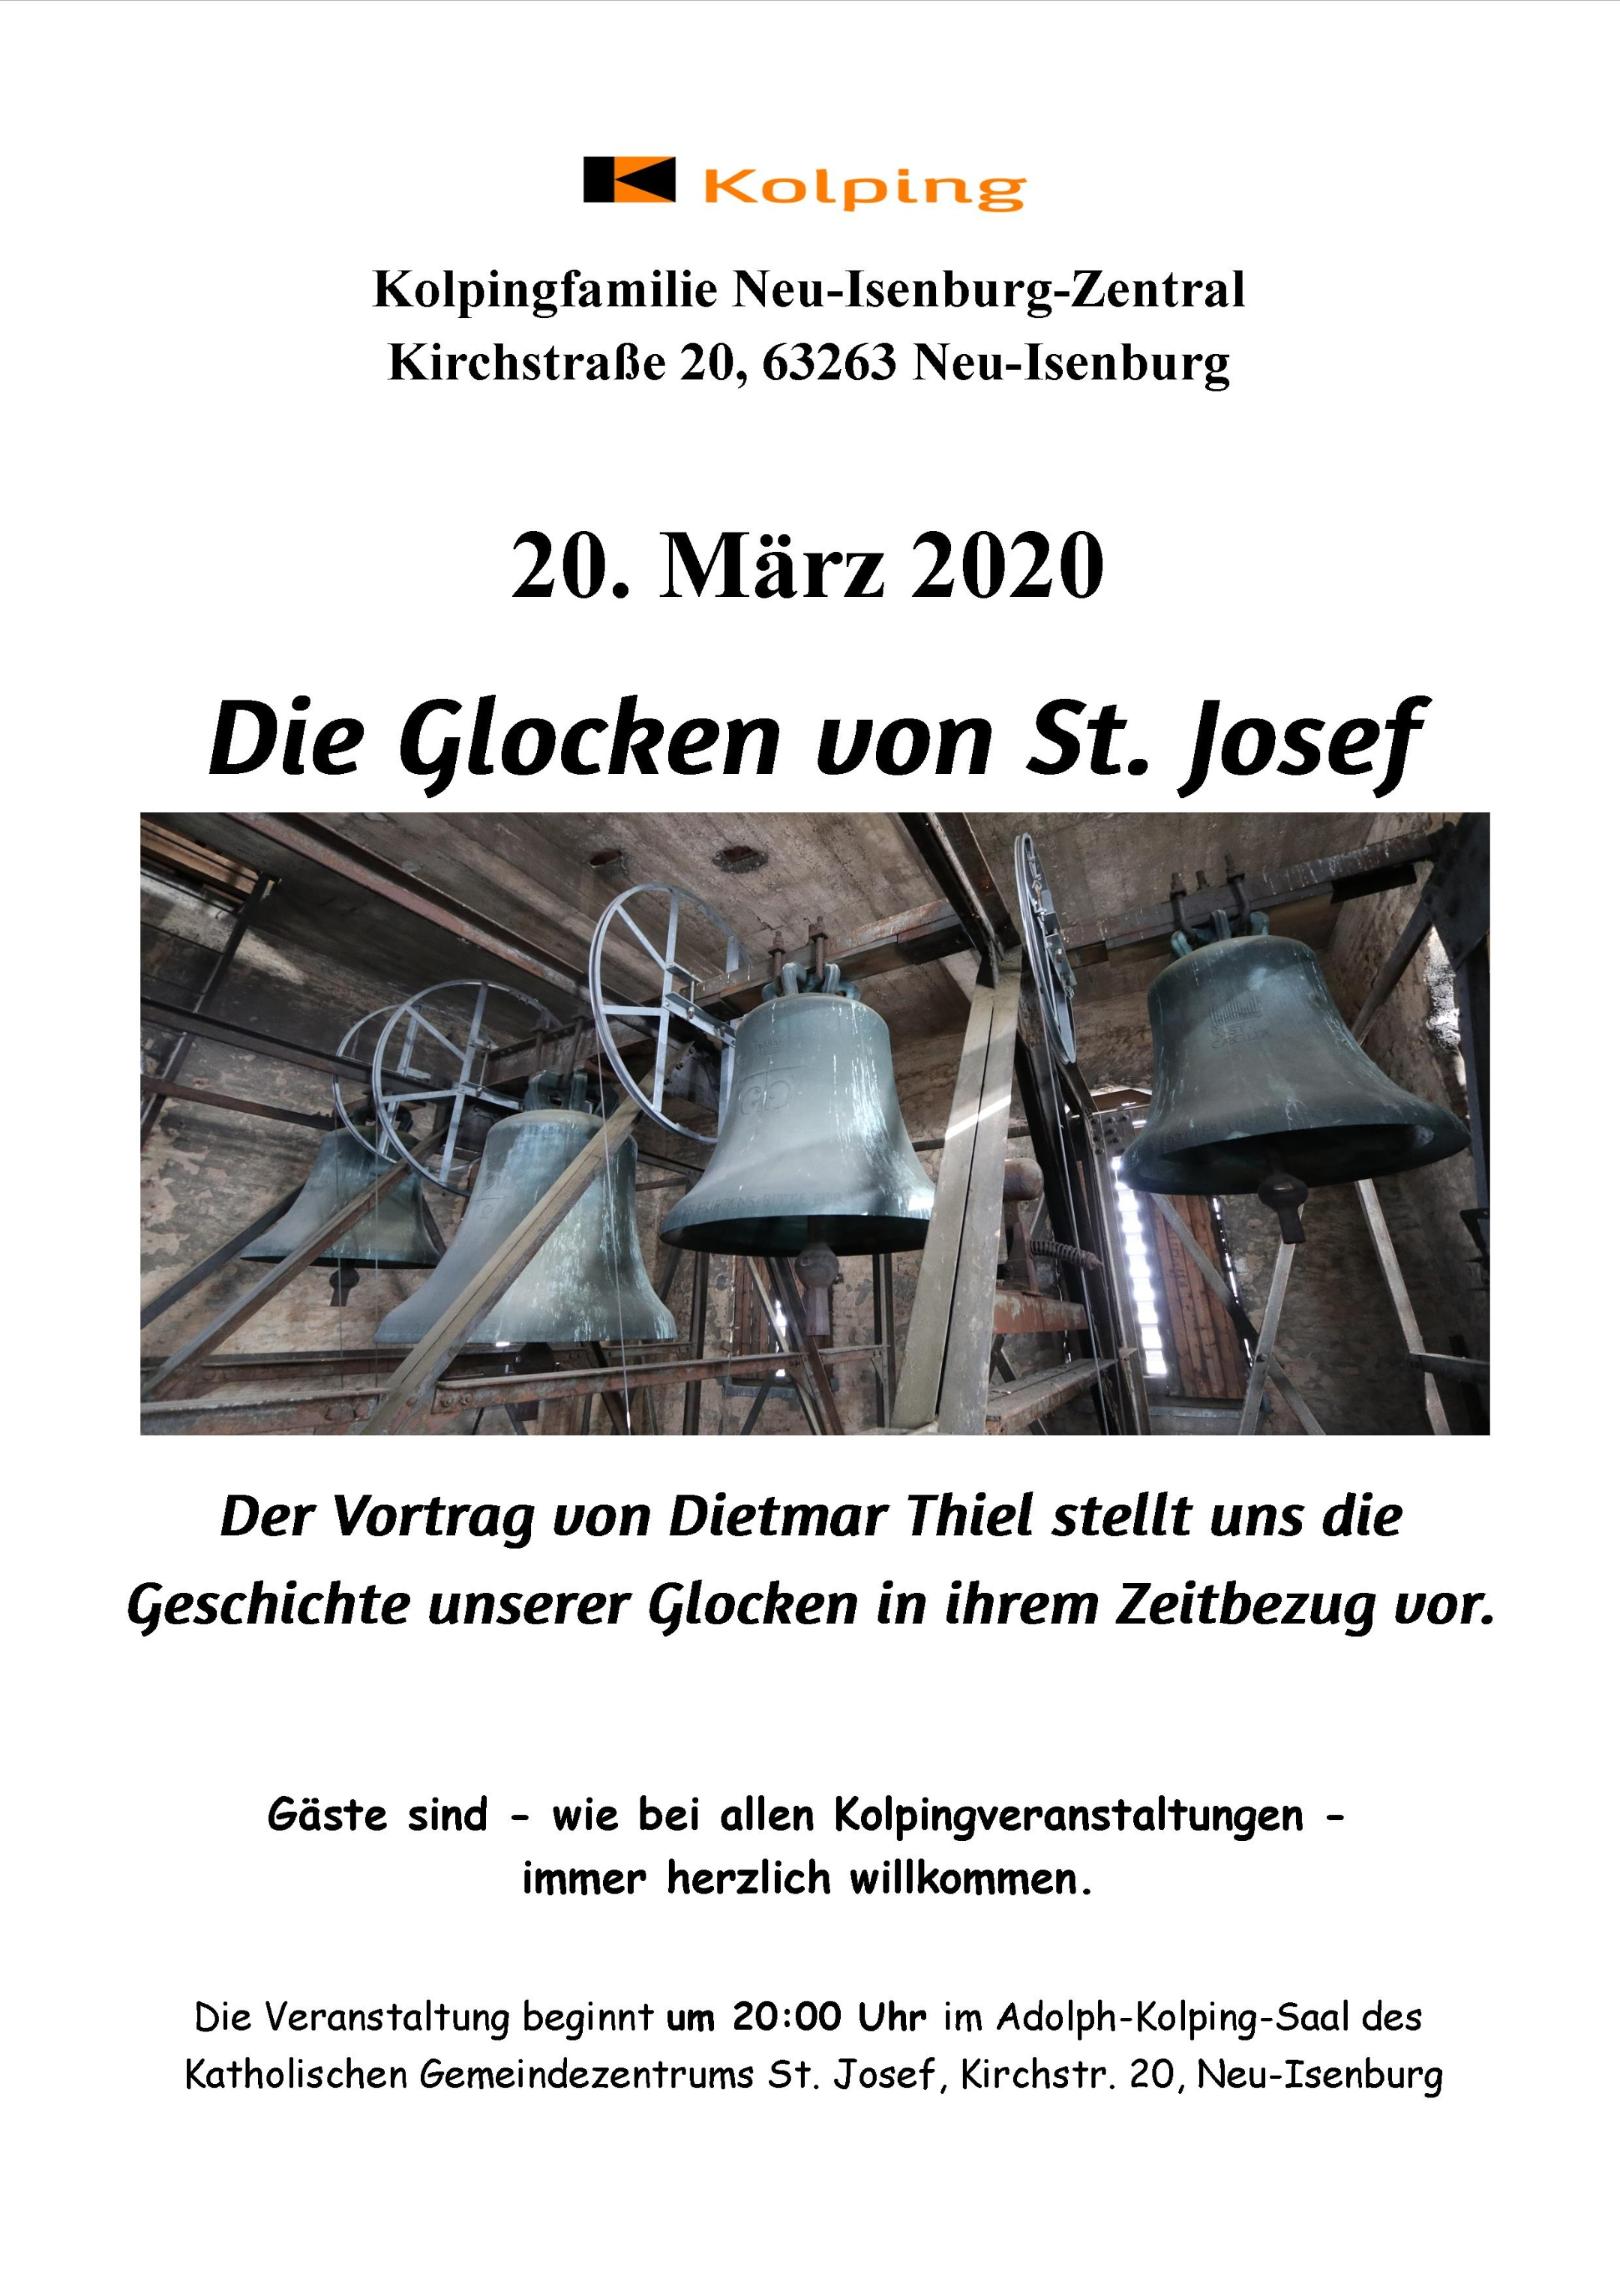 Die Glocken von St Josef (c) D. Thiel